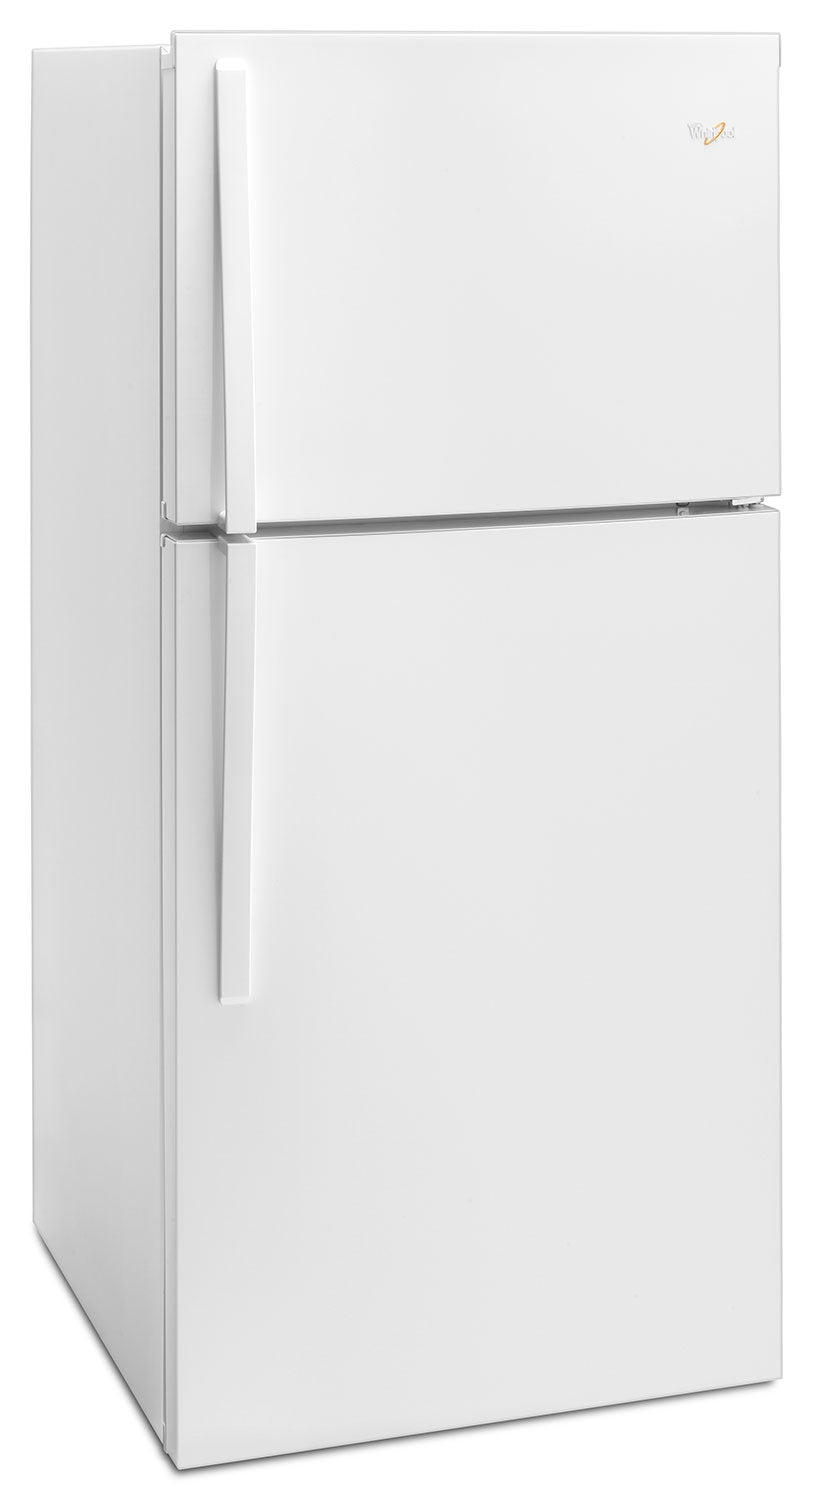 Whirlpool White Top-Freezer Refrigerator (19.2 Cu. Ft.) - WRT549SZDW